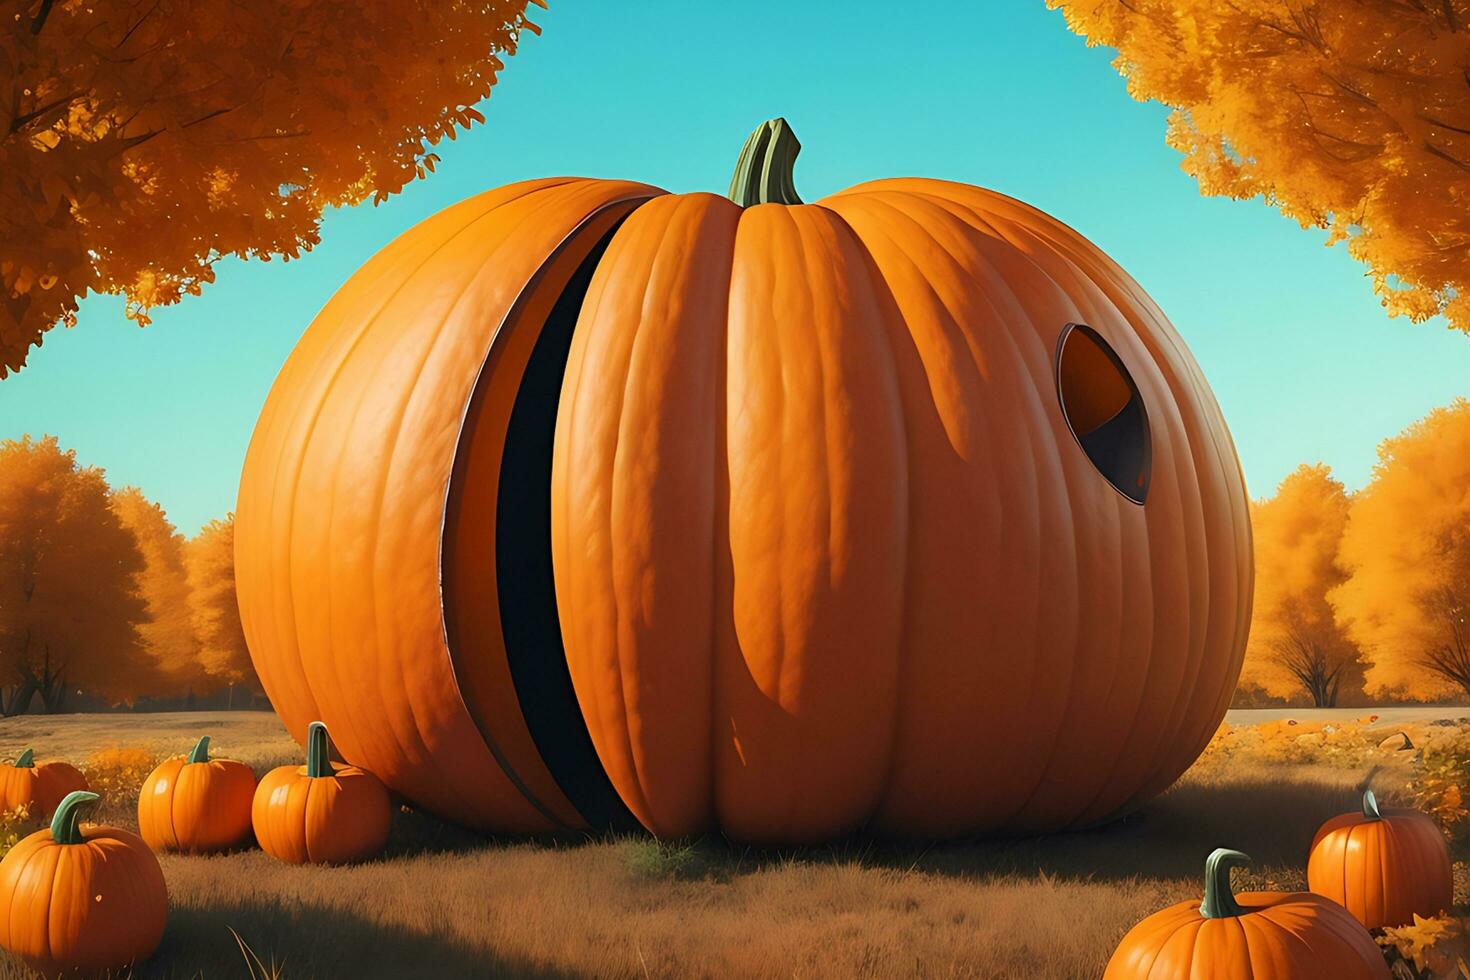 A Large Size of Pumpkin in nature sense futuristic background photo